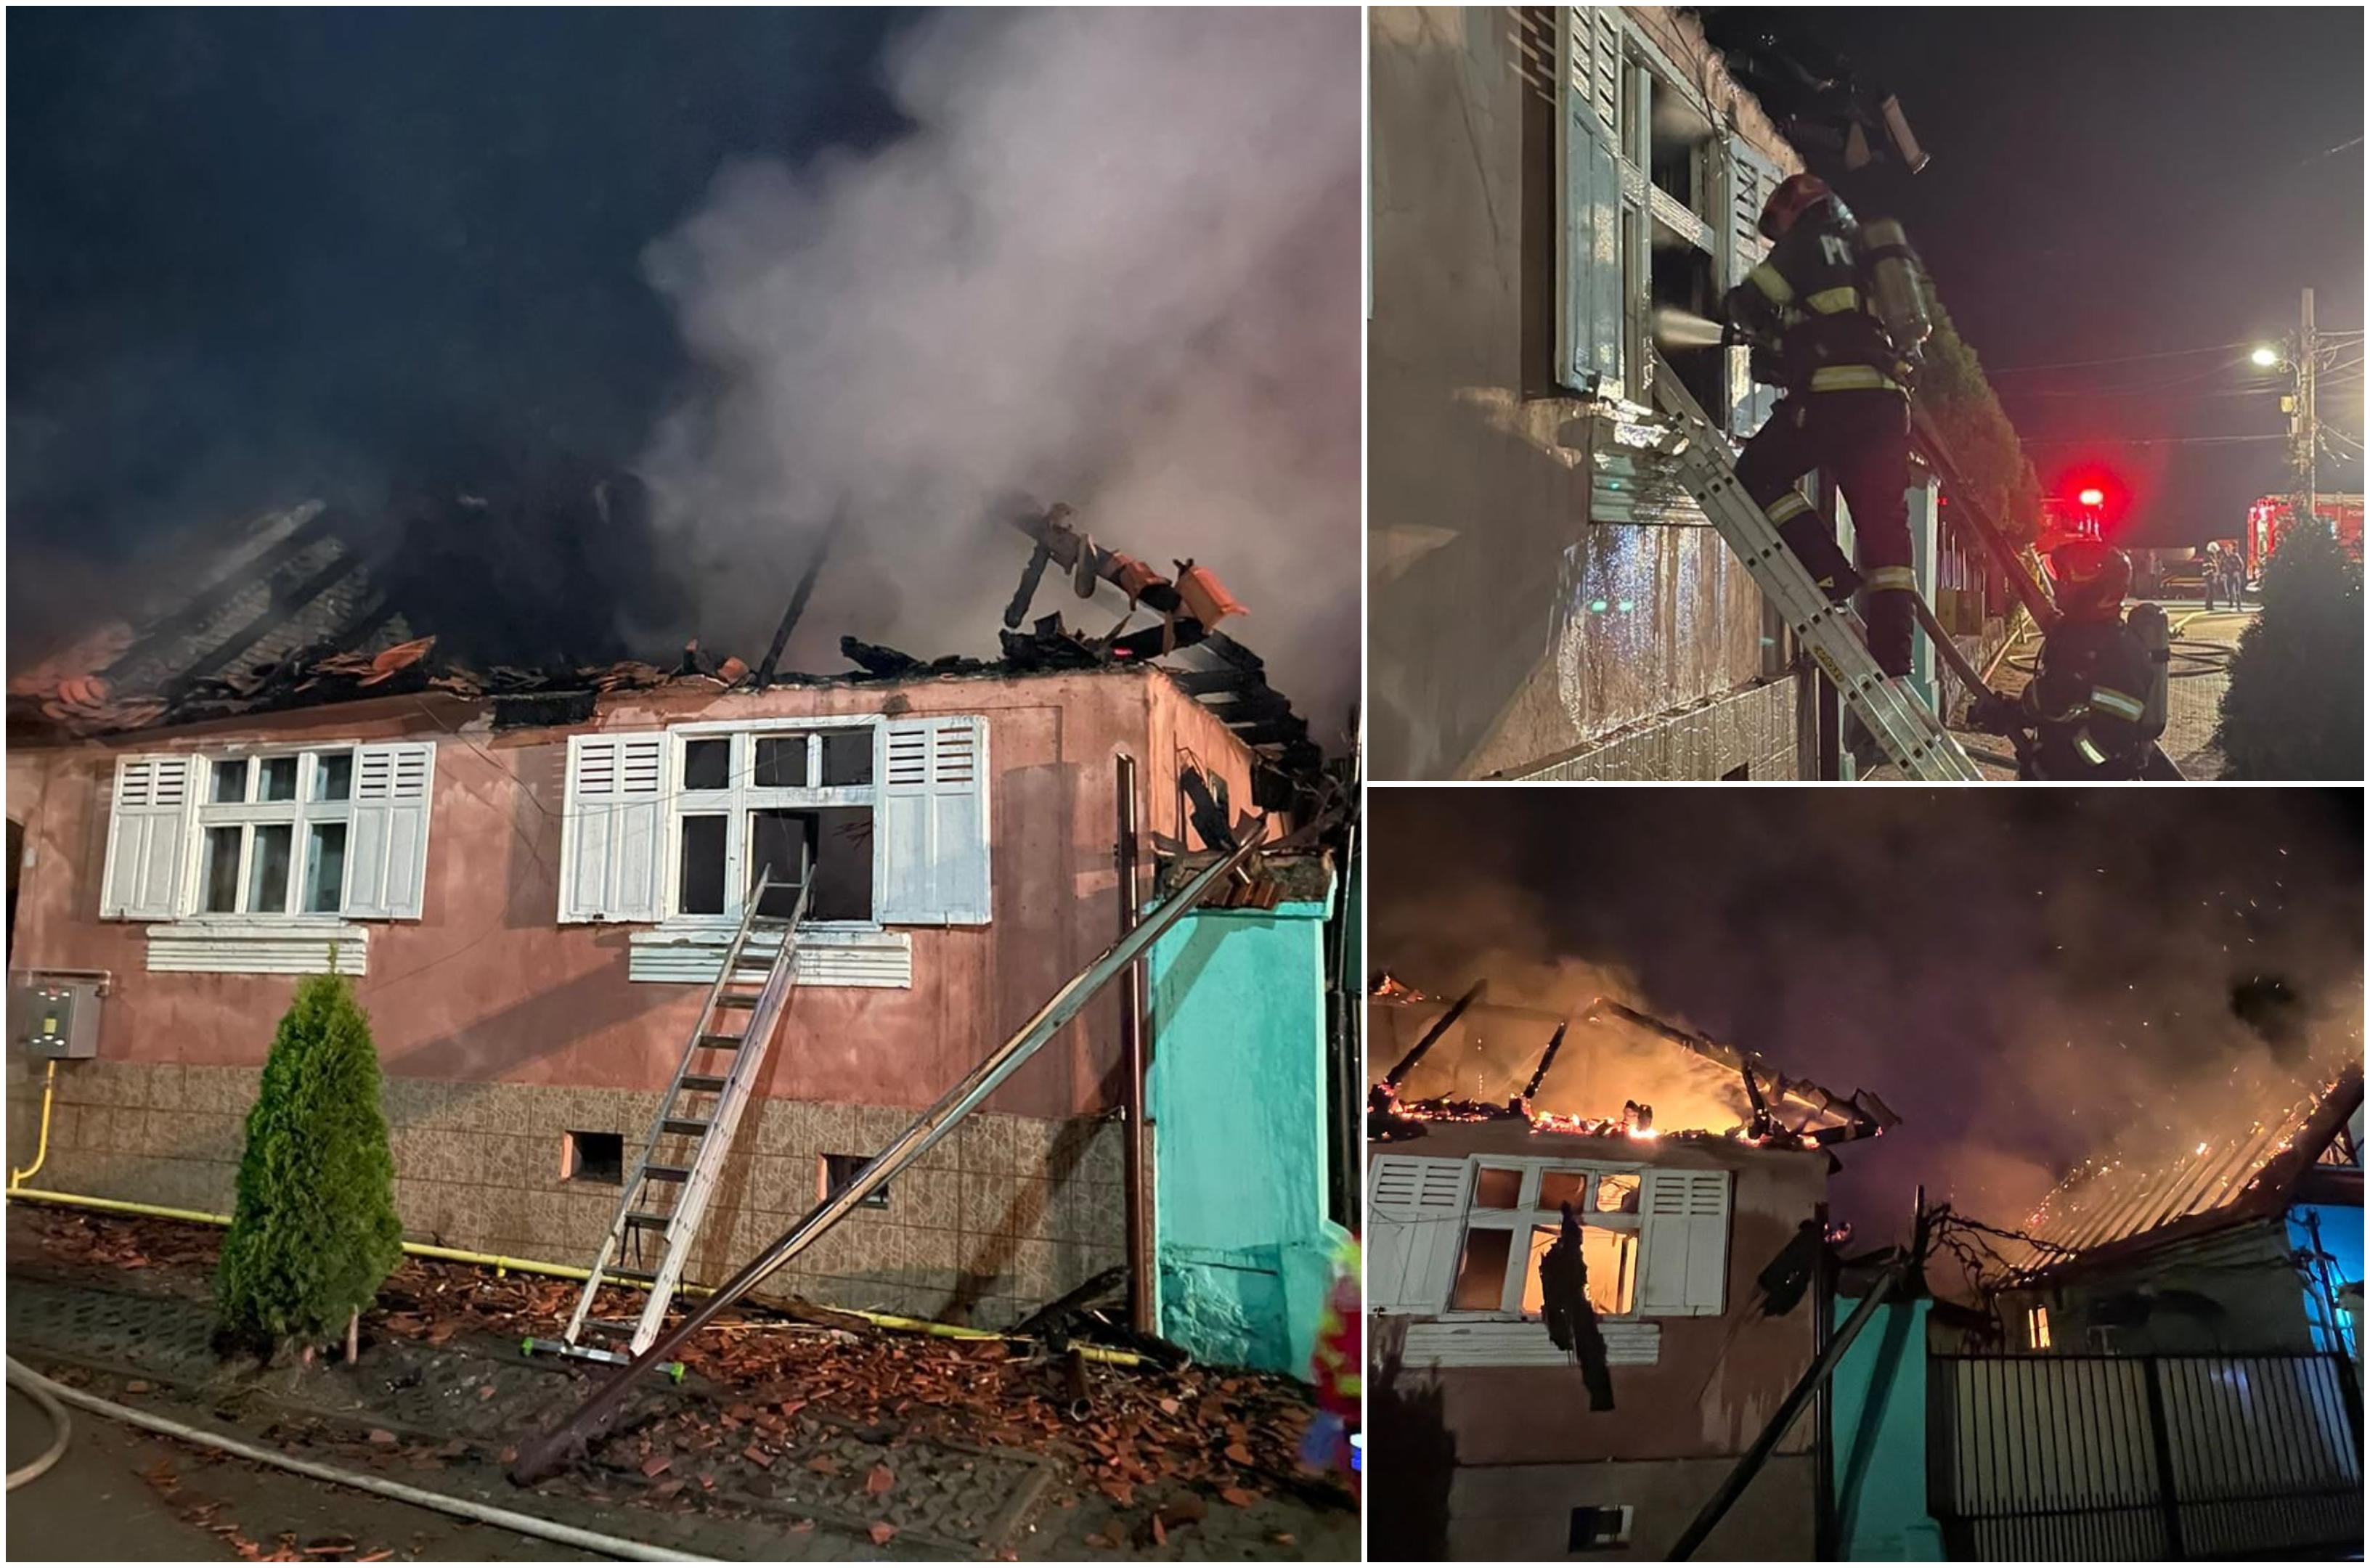 Bărbat de 70 de ani, găsit ars de viu în propria casă. Două locuinţe mistuite de flăcări, într-un incendiu teribil în Sibiu